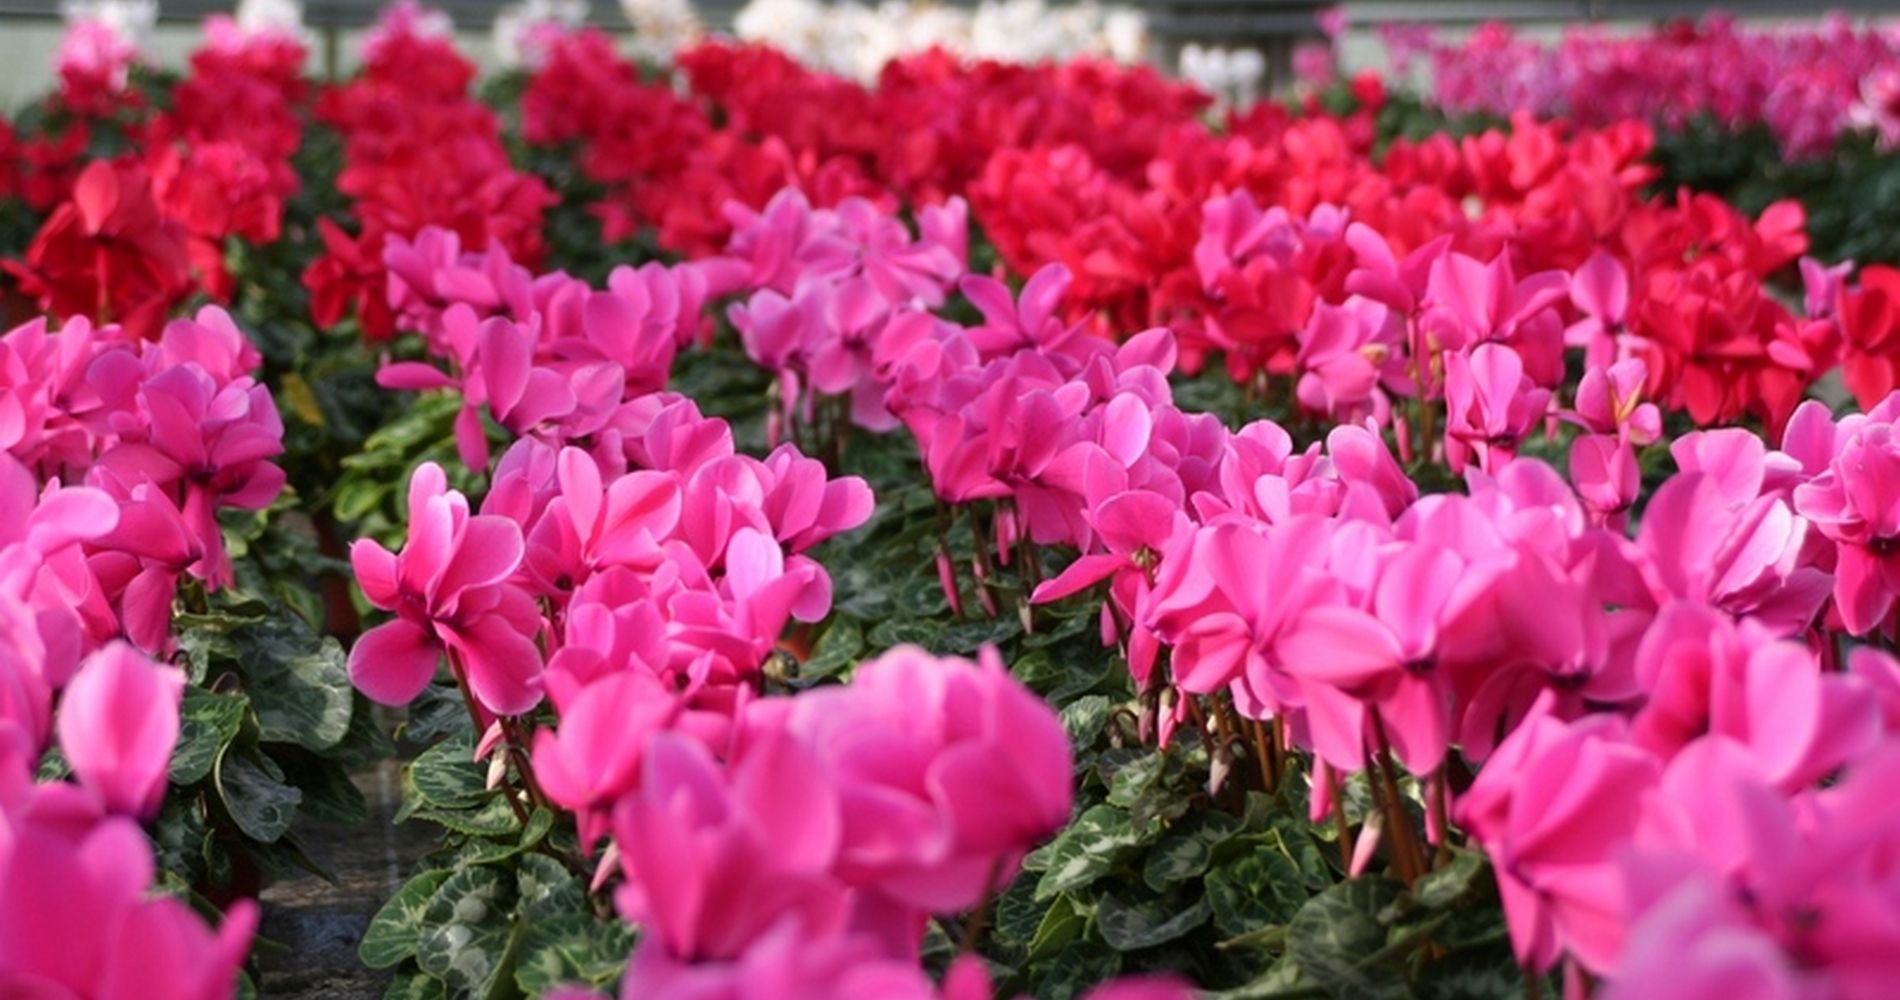 Schmidt - Ihr Profi für Floristik und Blumen - Grüne Gärtnerei - damit es in Ihrem Garten und Haus blüht